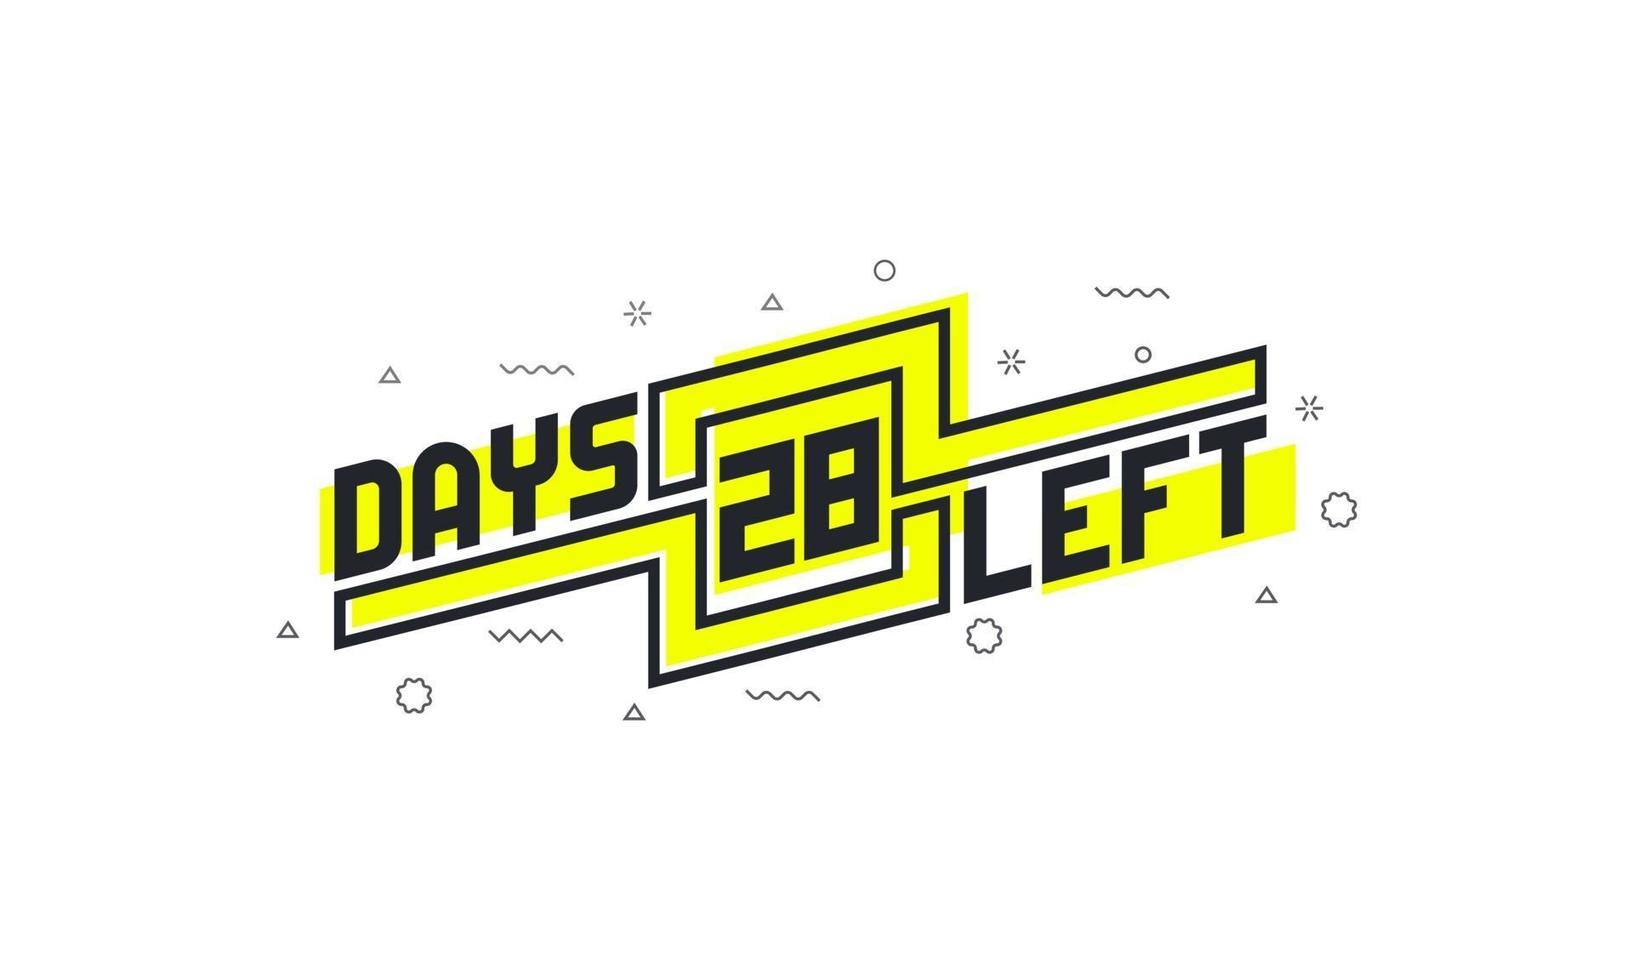 Noch 28 Tage Countdown-Zeichen zum Verkauf oder zur Promotion. vektor